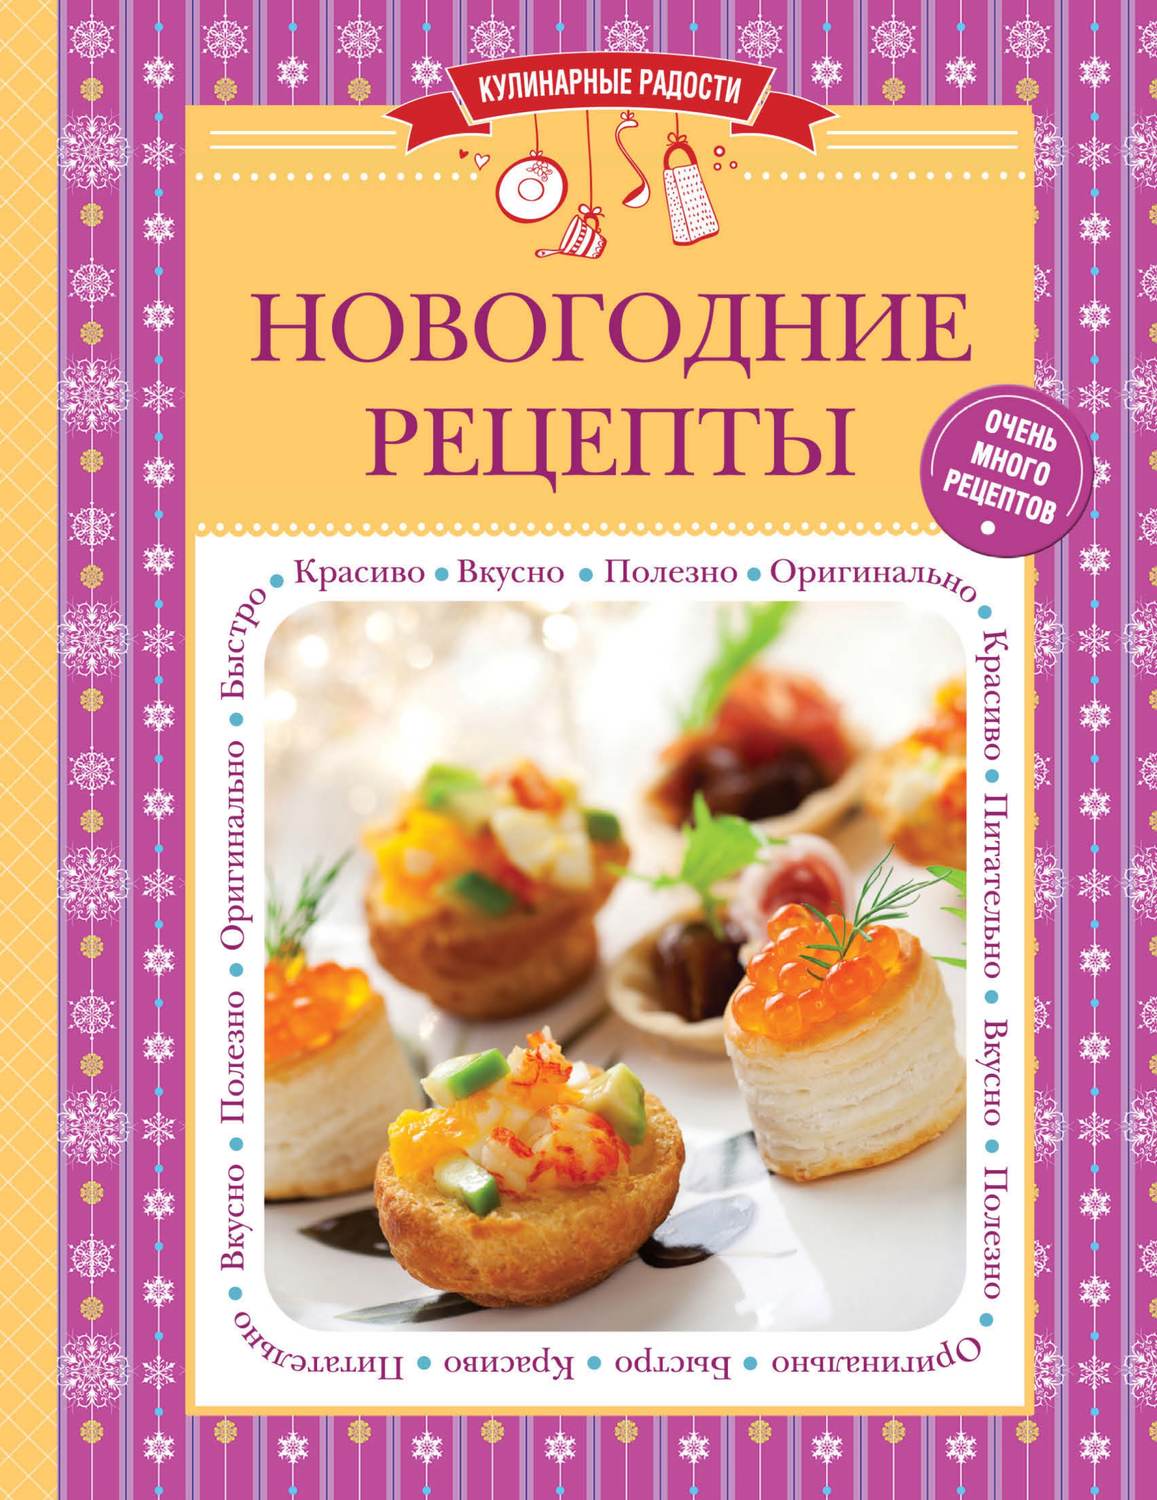 Книги про рецепты. Книга новогодних рецептов. Кулинарные рецепты. Книга кулинарных рецептов. Книга вкусные рецепты.